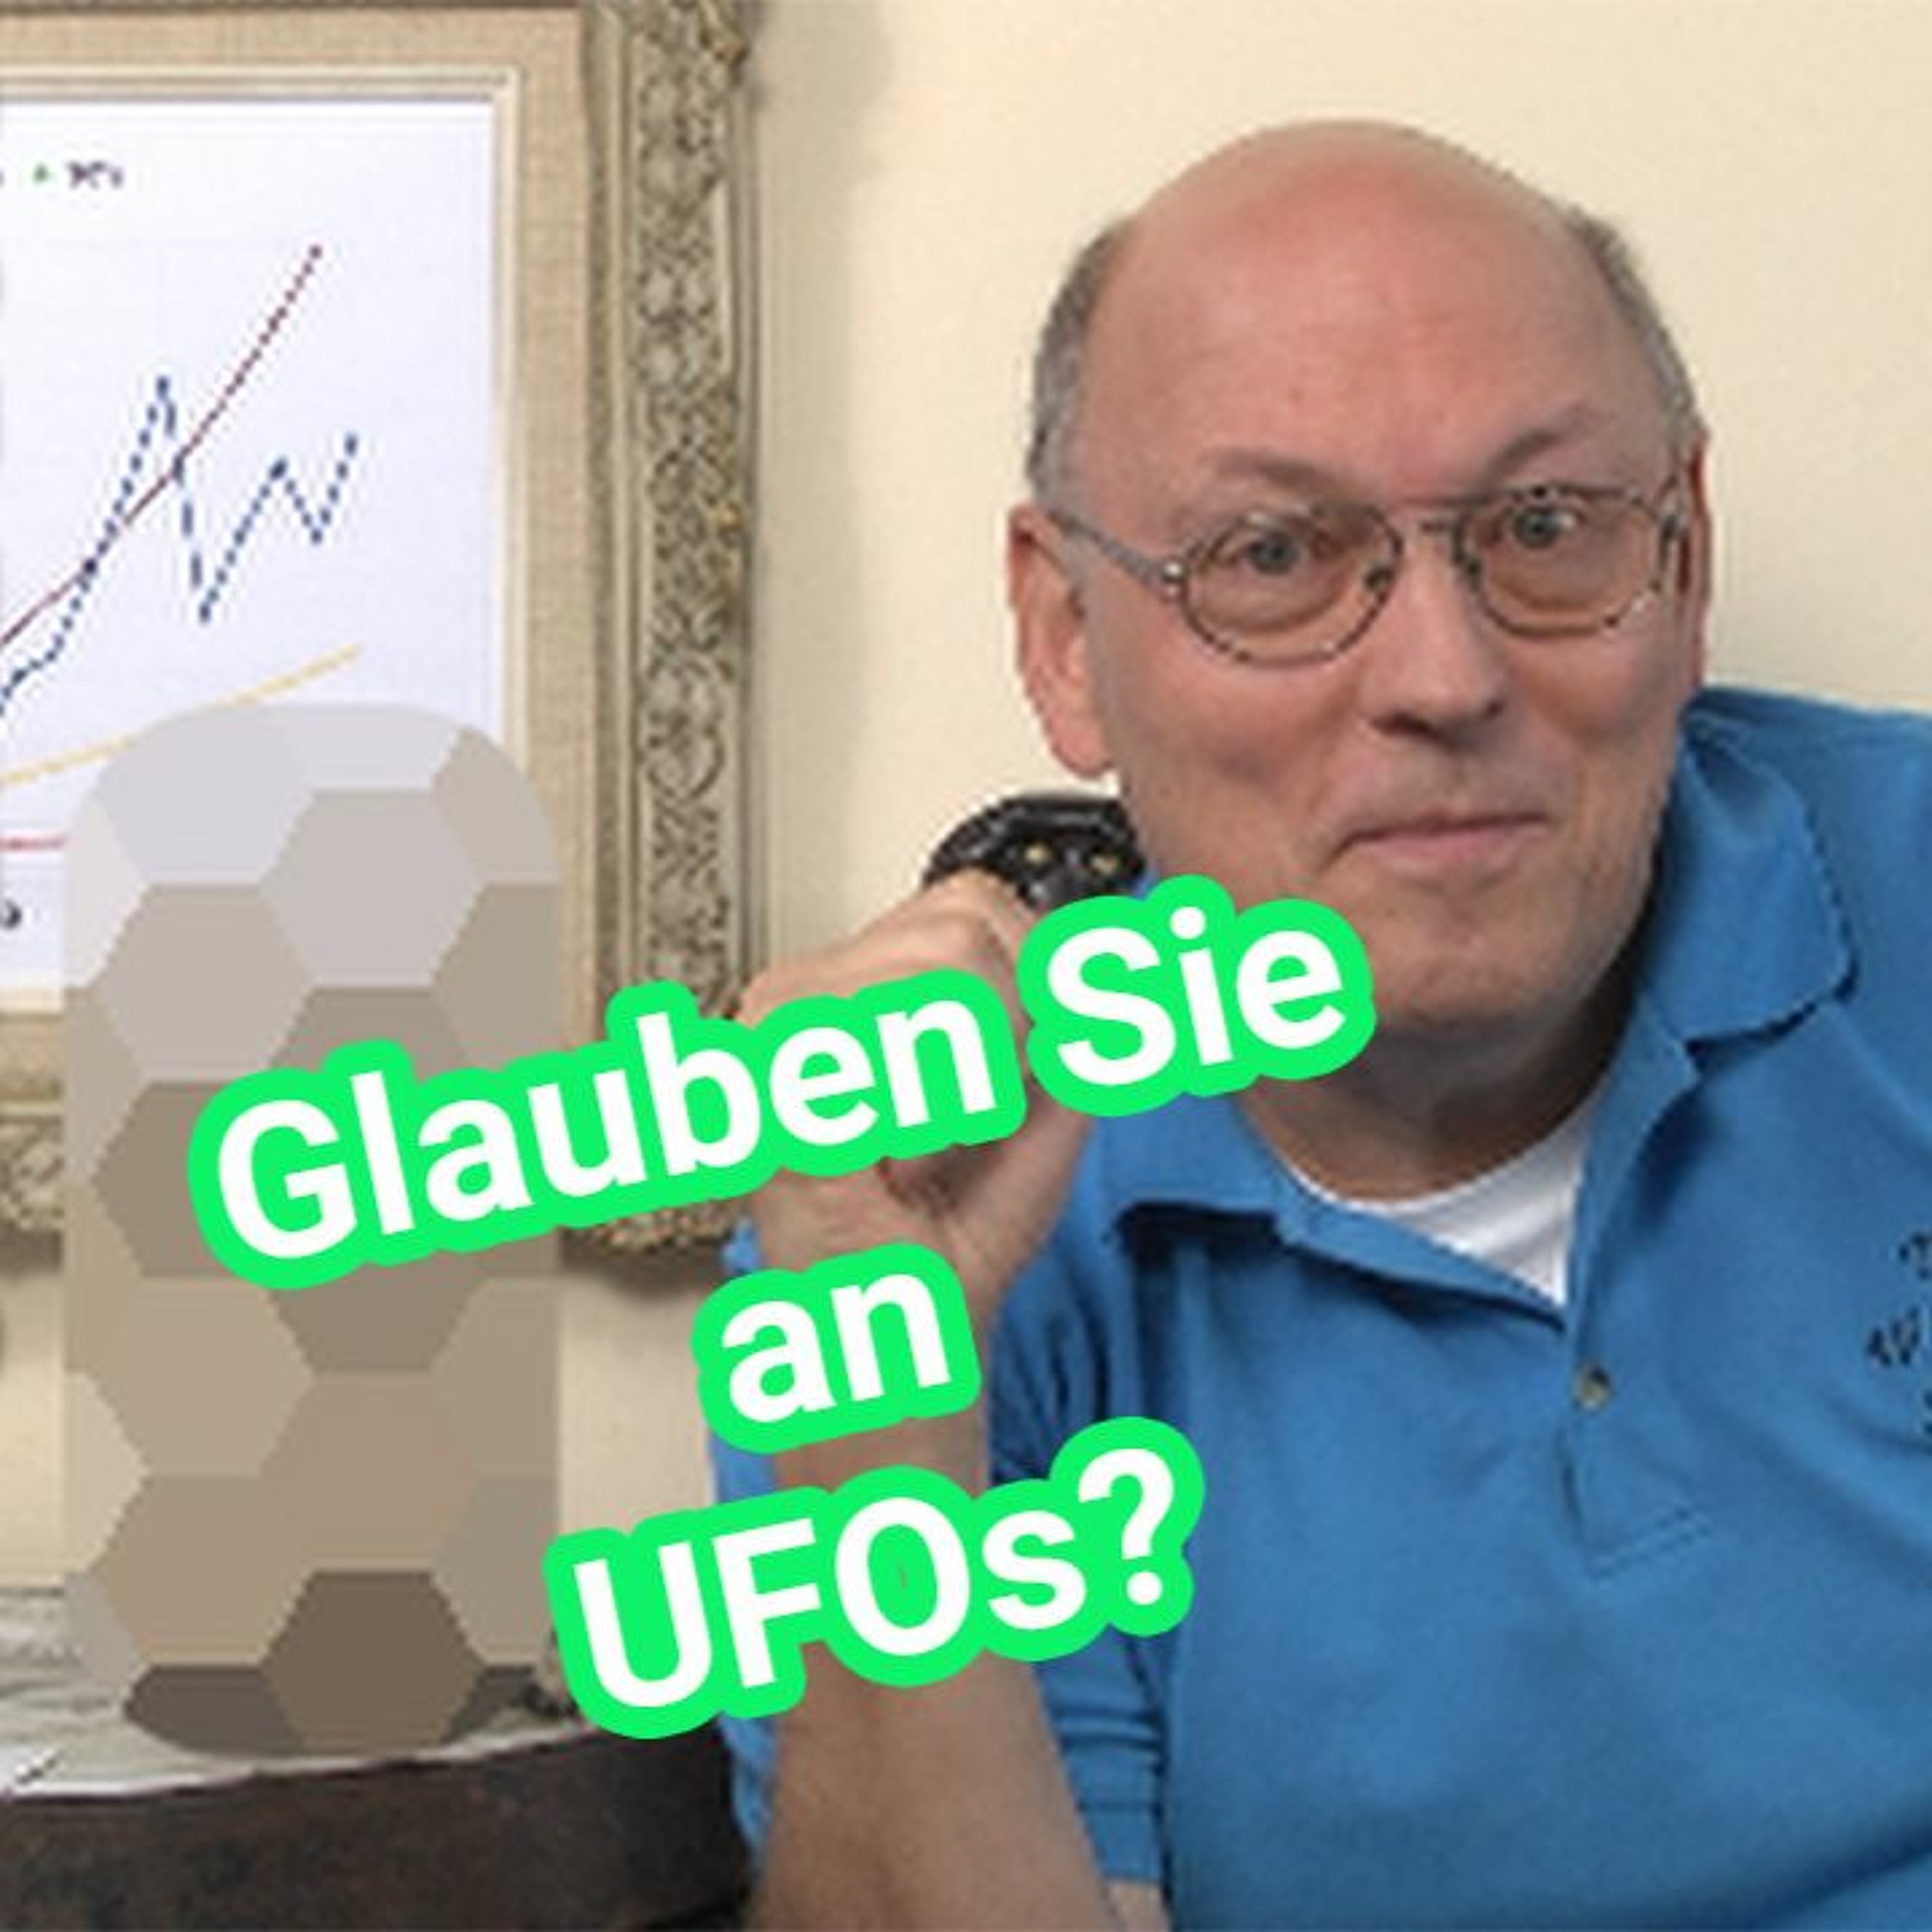 Glauben Sie an UFOs? Die Wissenschaft sucht nach ihnen mit Seti und Meti - Gesamte Videoserie 2014